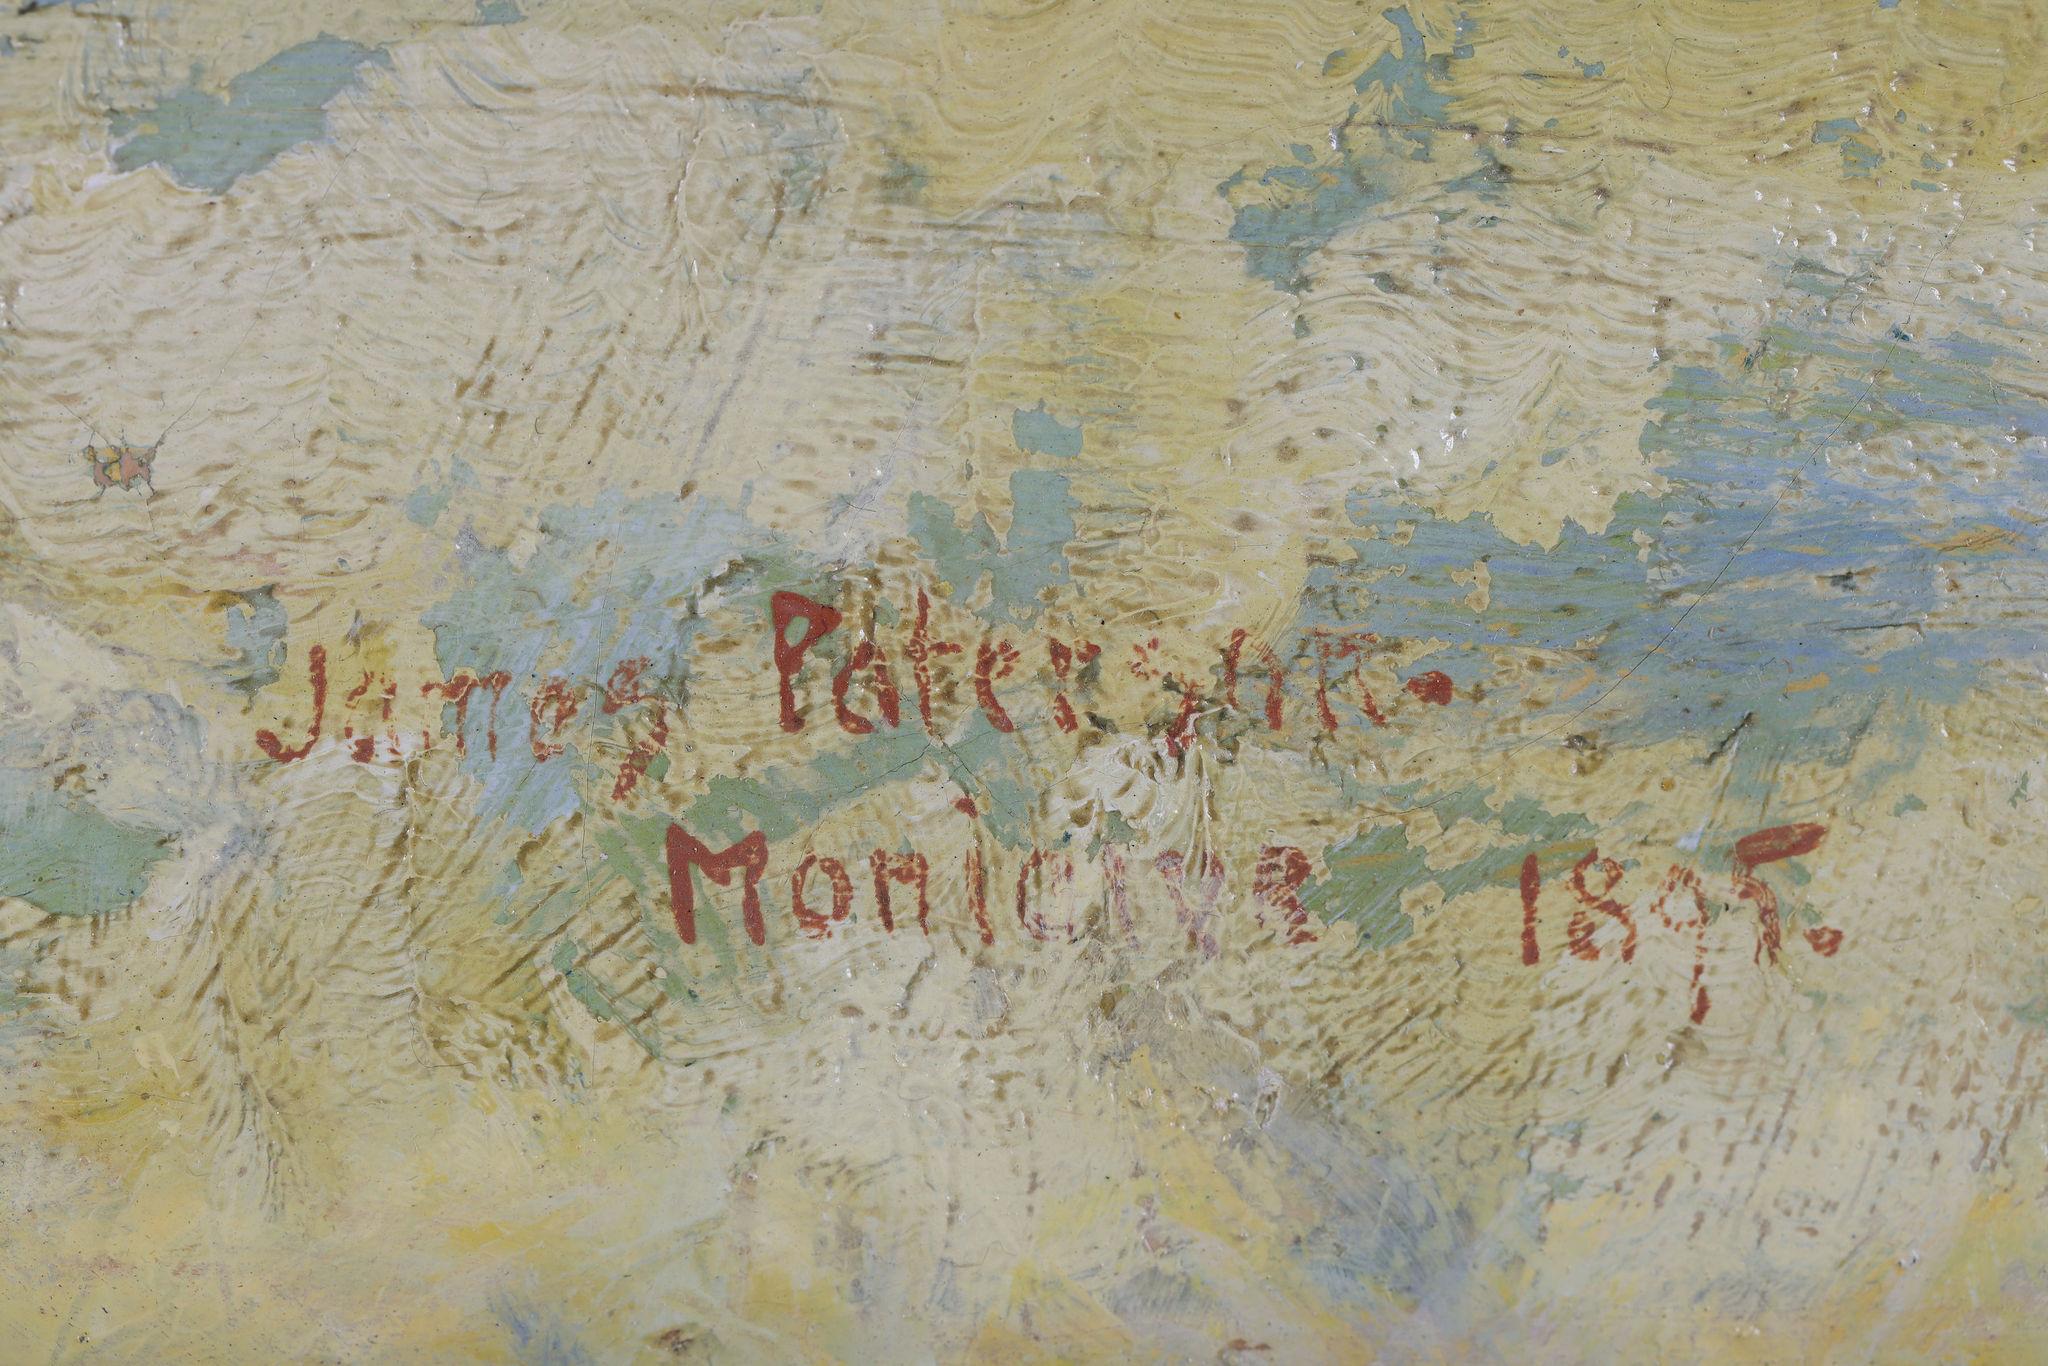 James Paterson
Signiert und datiert 1895

Auf der Rückseite signiert James Paterson
176 Bath Street, Glasgow
Killniess, Moniaive, Schottland auf der Rückseite

Leinwand Größe: 21 x 26